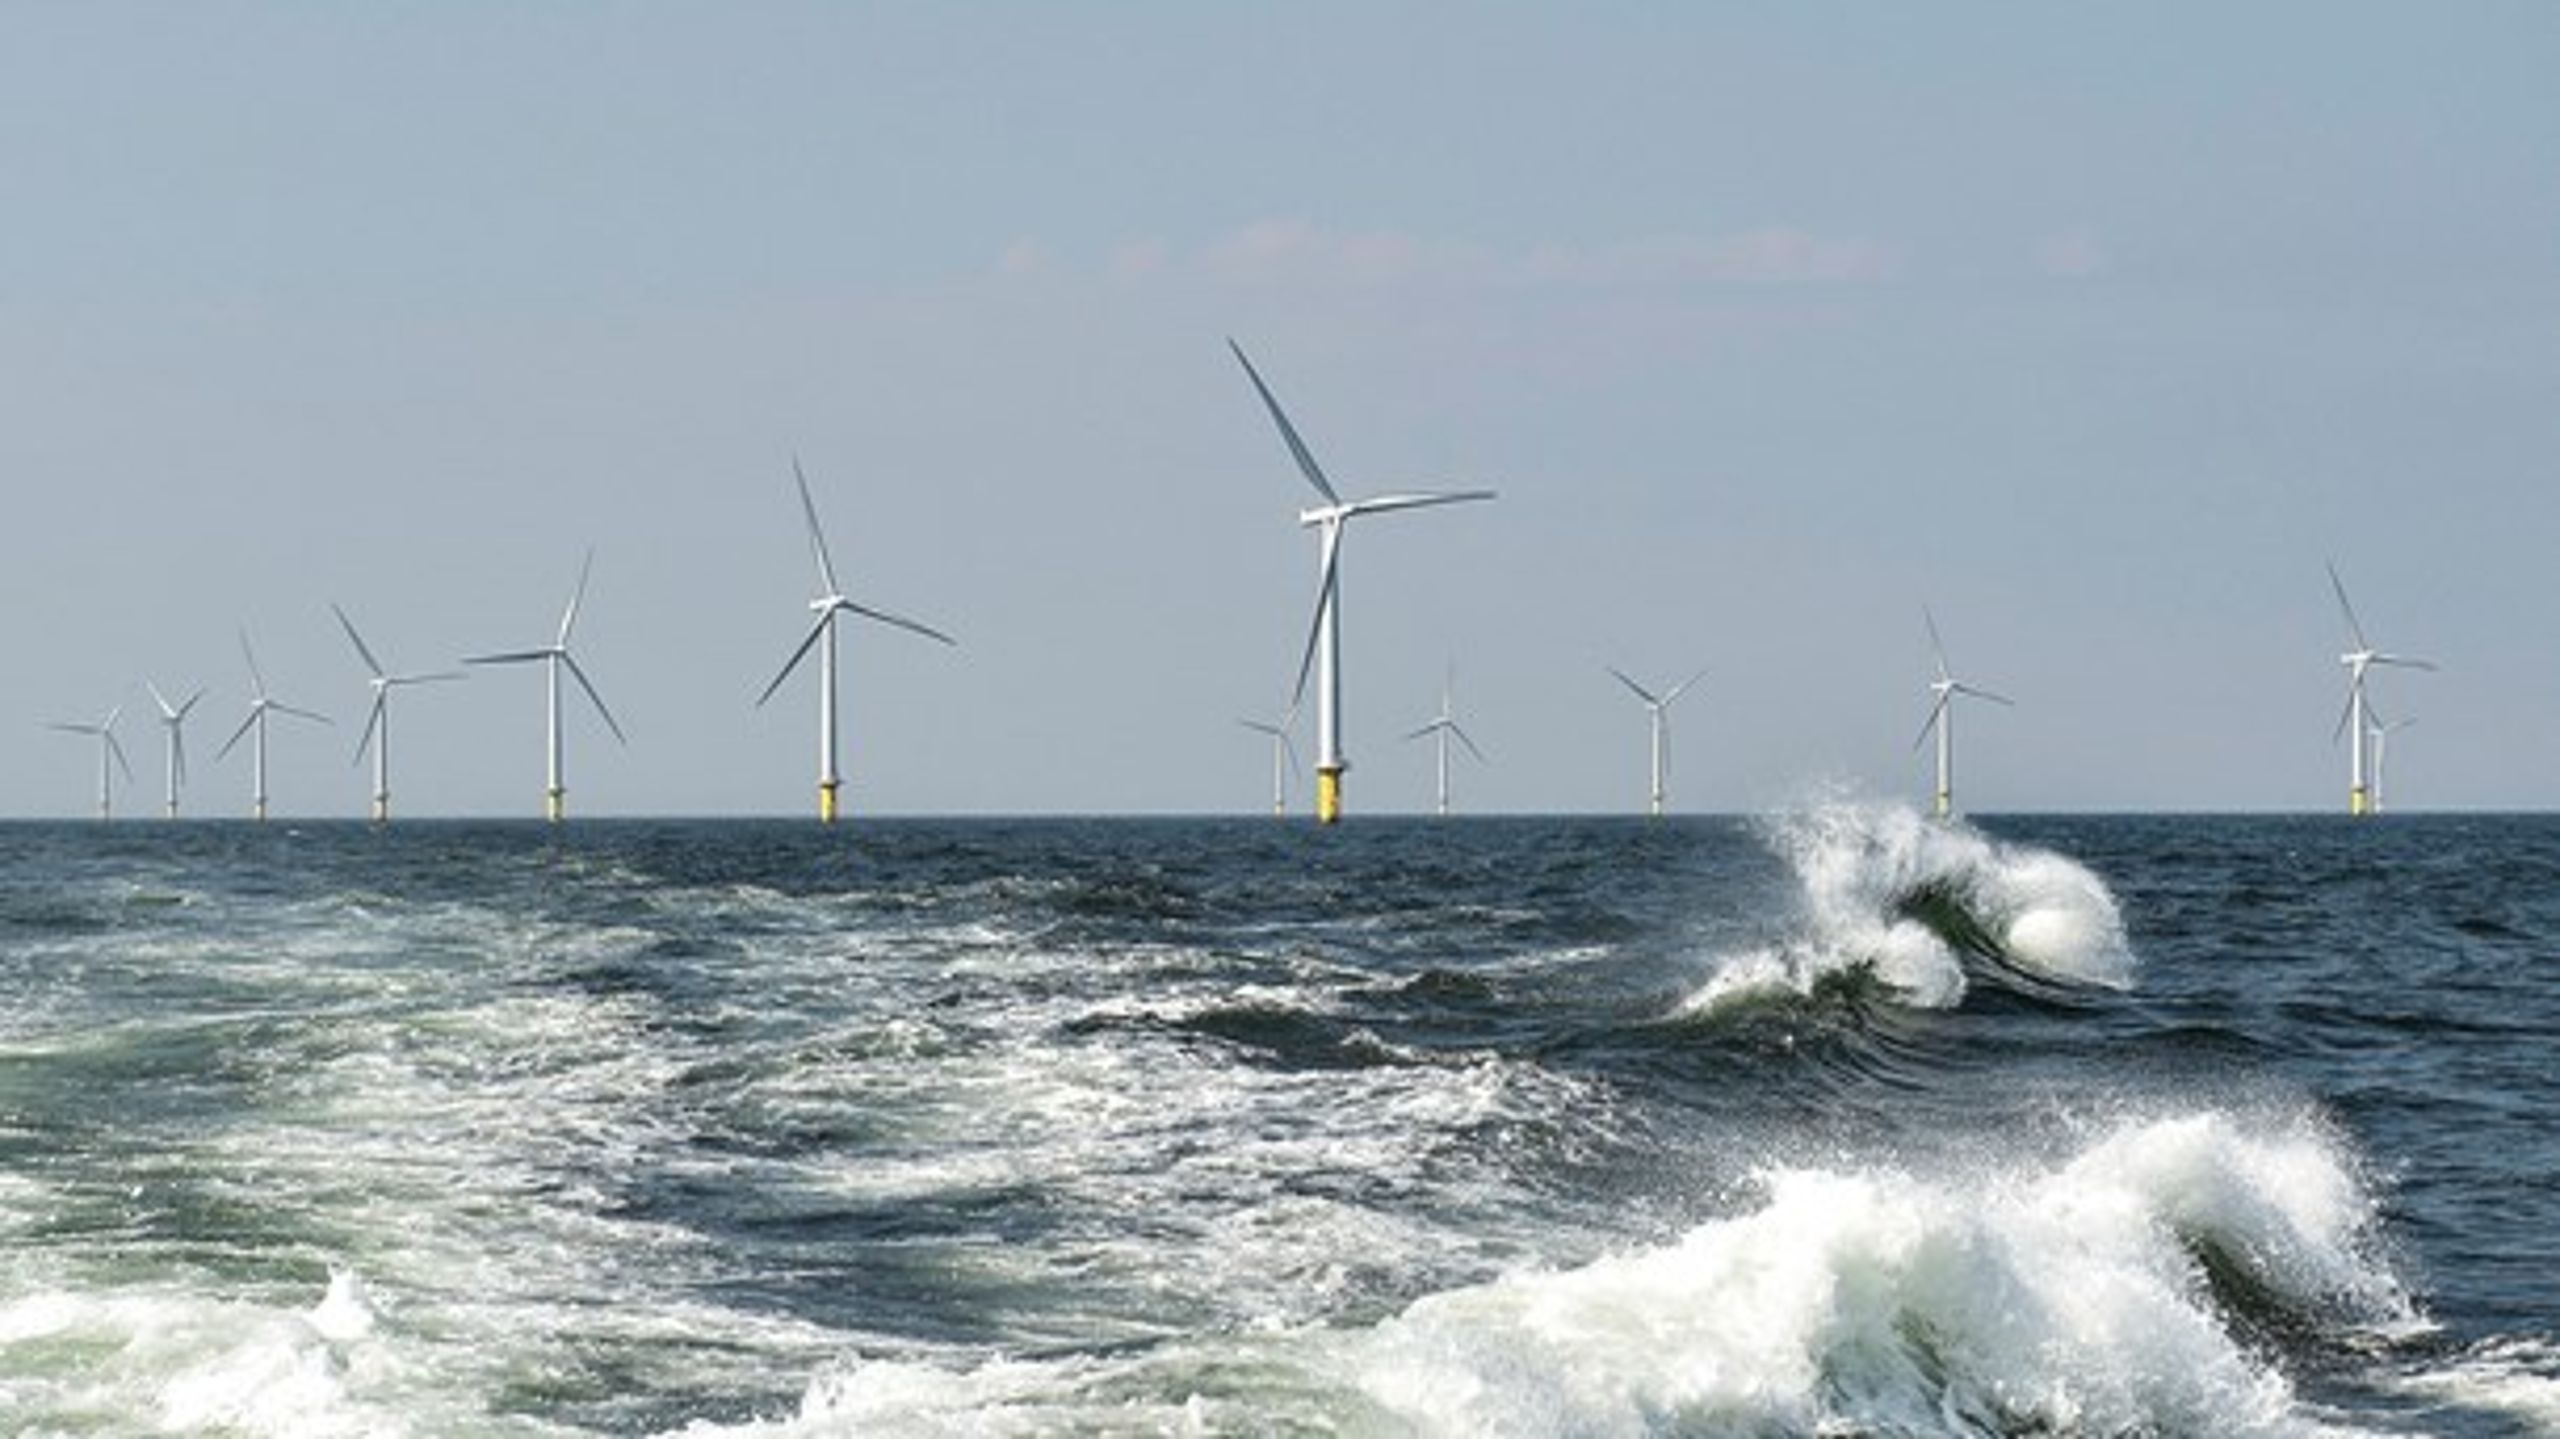 Energi-øen ’North Sea Energy Hub’, der skal integrere havmølleparker i Nordsøen, er et af projekterne, der skal sikre mere grøn strøm til Europa, skriver Anders Stouge fra Dansk Energi.